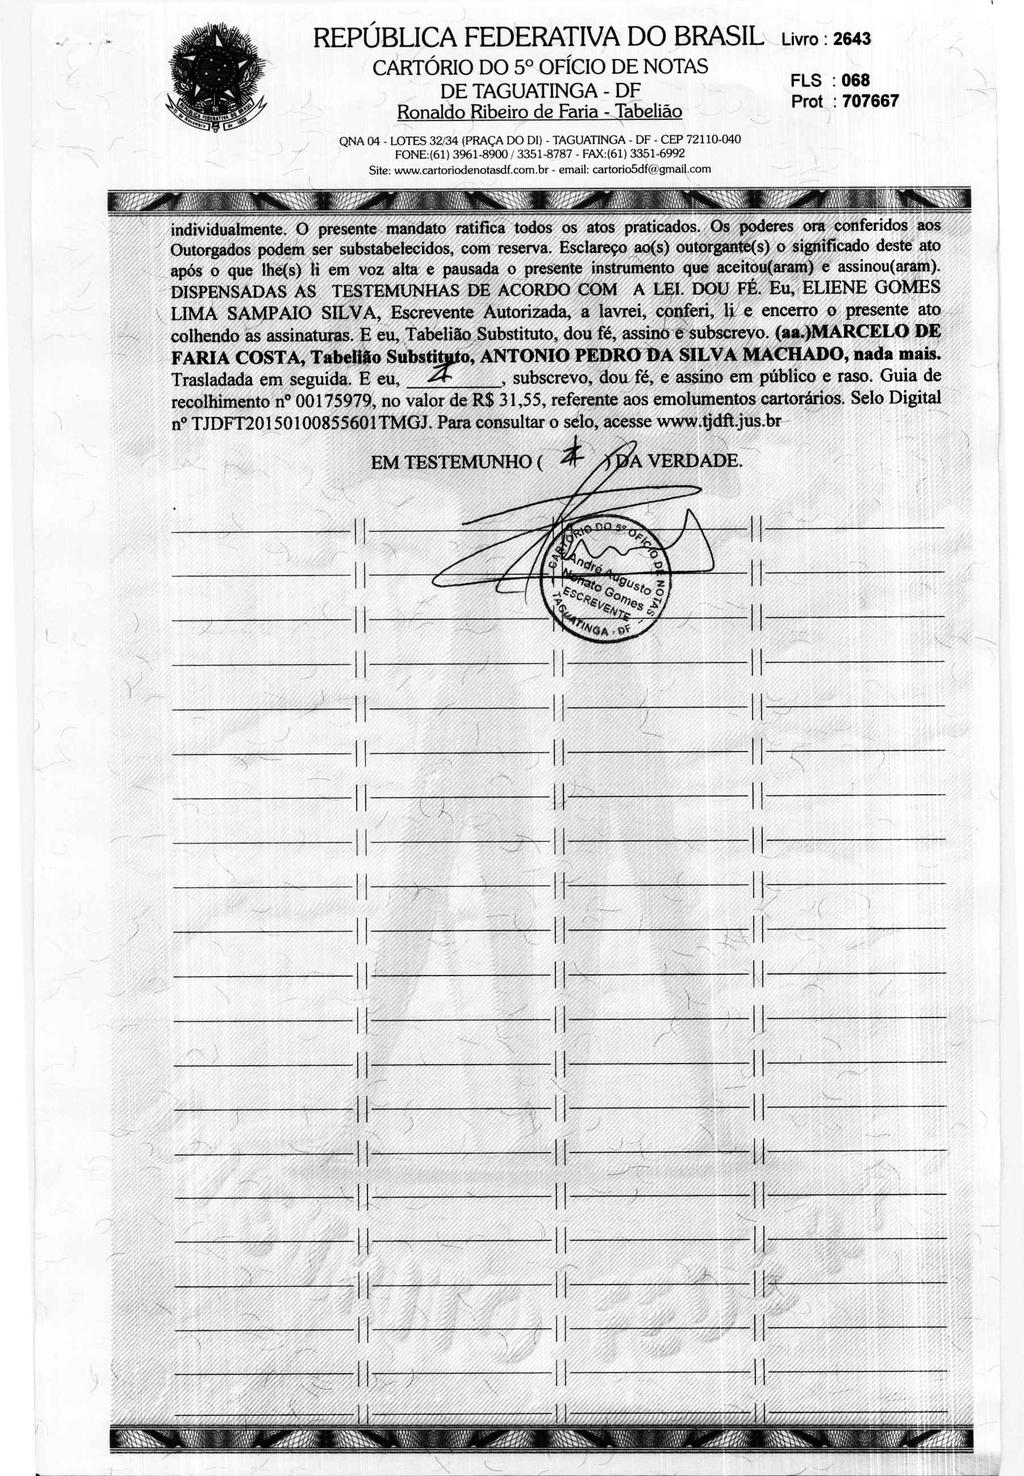 fls. 102 Este documento é cópia do original, assinado digitalmente por MARCOS CALDAS MARTINS CHAGAS e Tribunal de Justica Sao Paulo, protocolado em 11/04/2016 às 13:39, sob o número